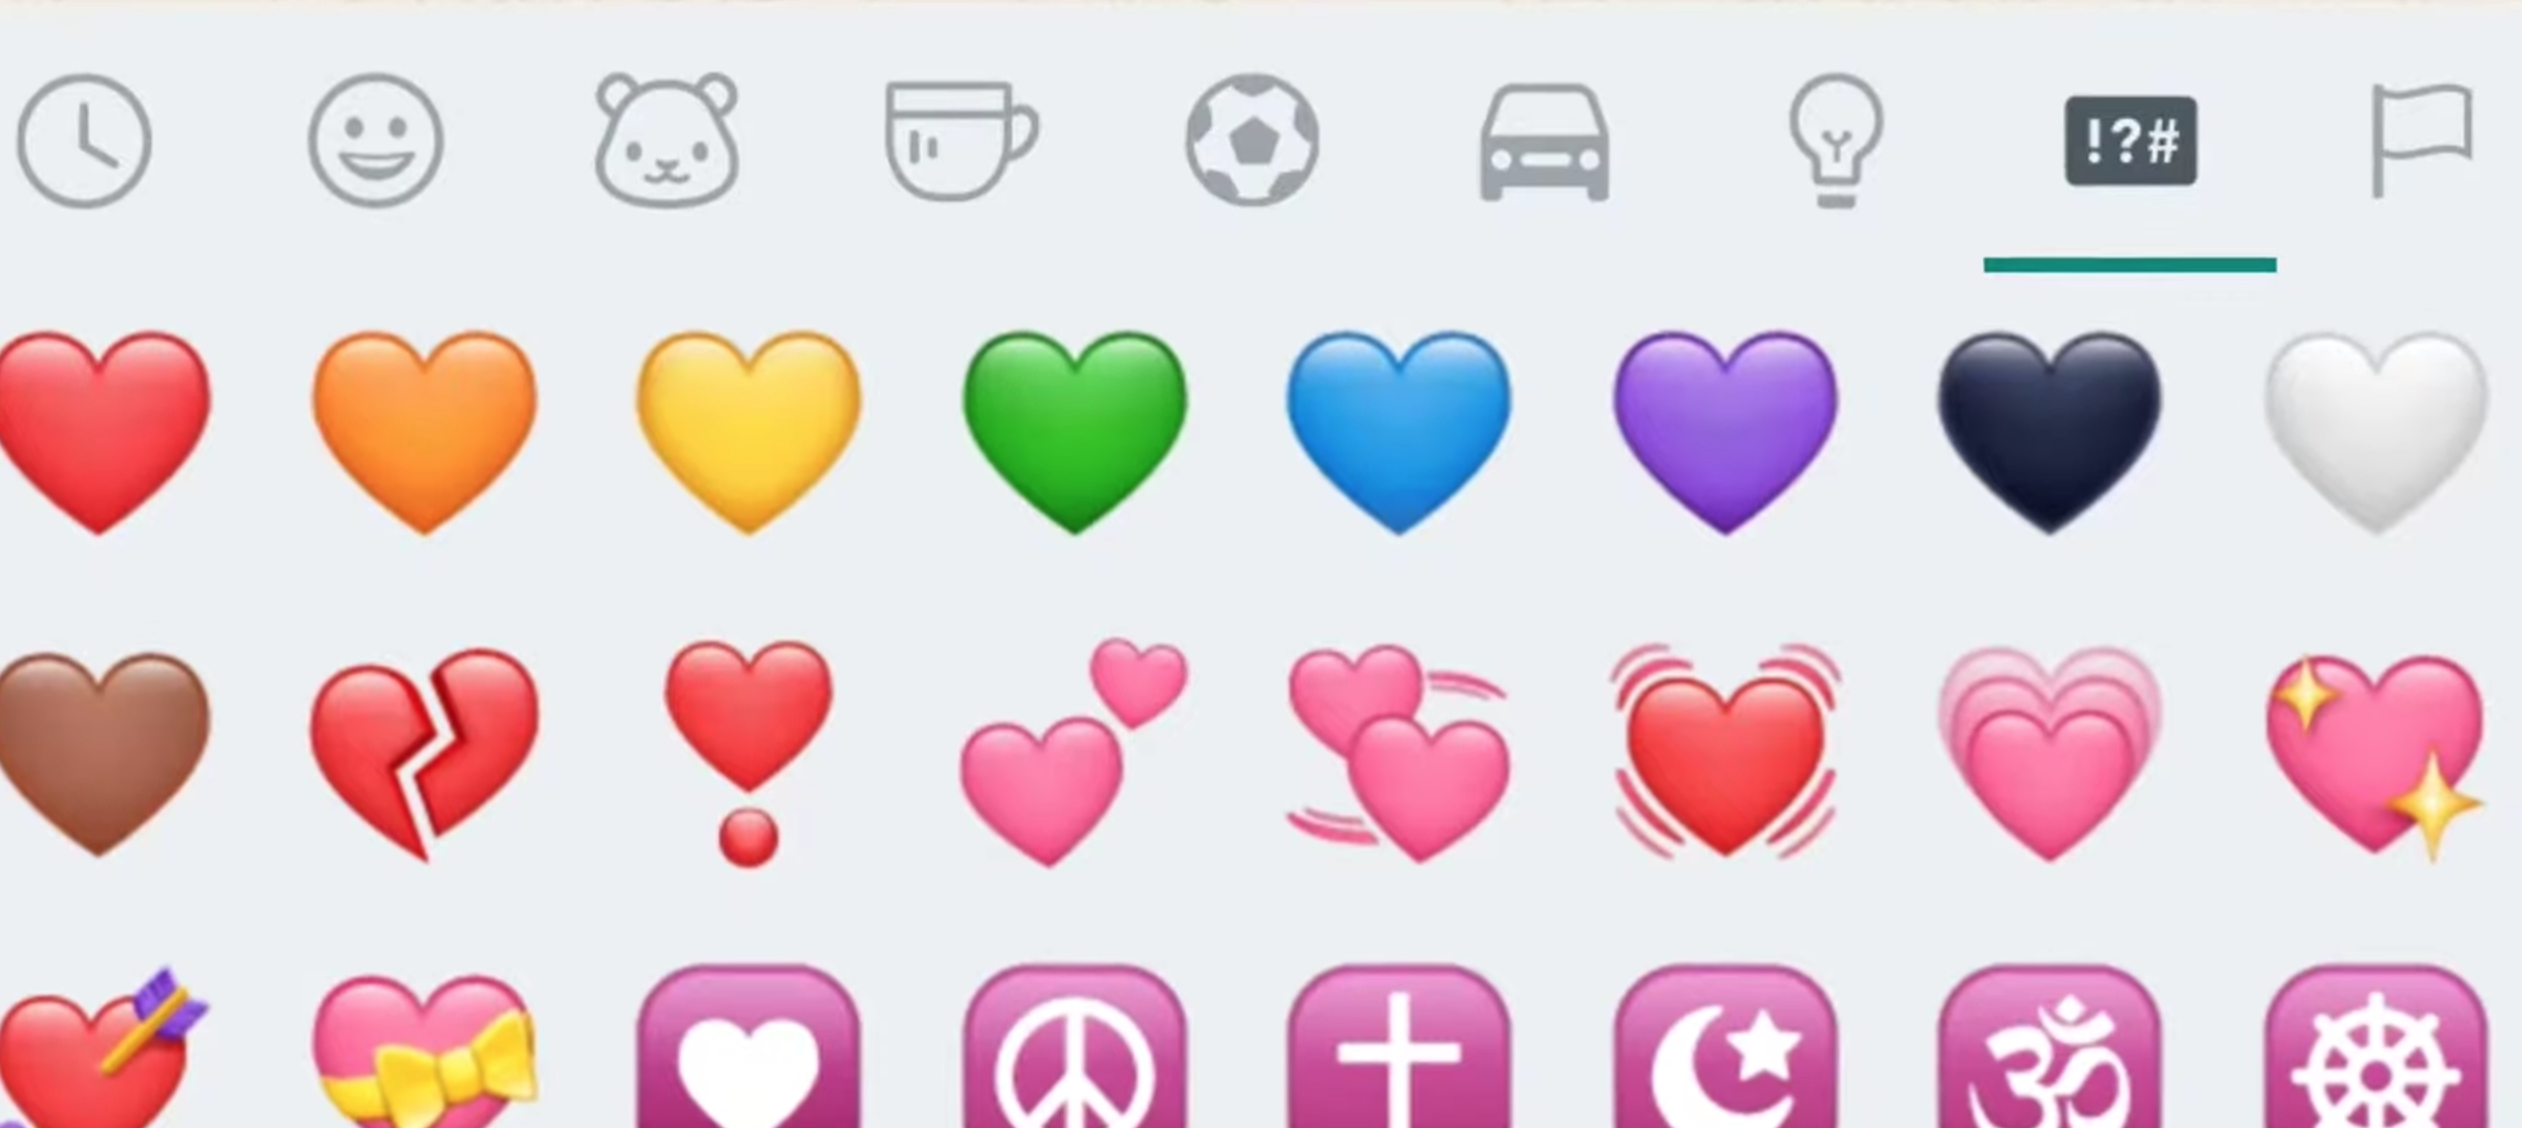  Pravo značenje emojija srca koje se nalaze na WhatsApp-u